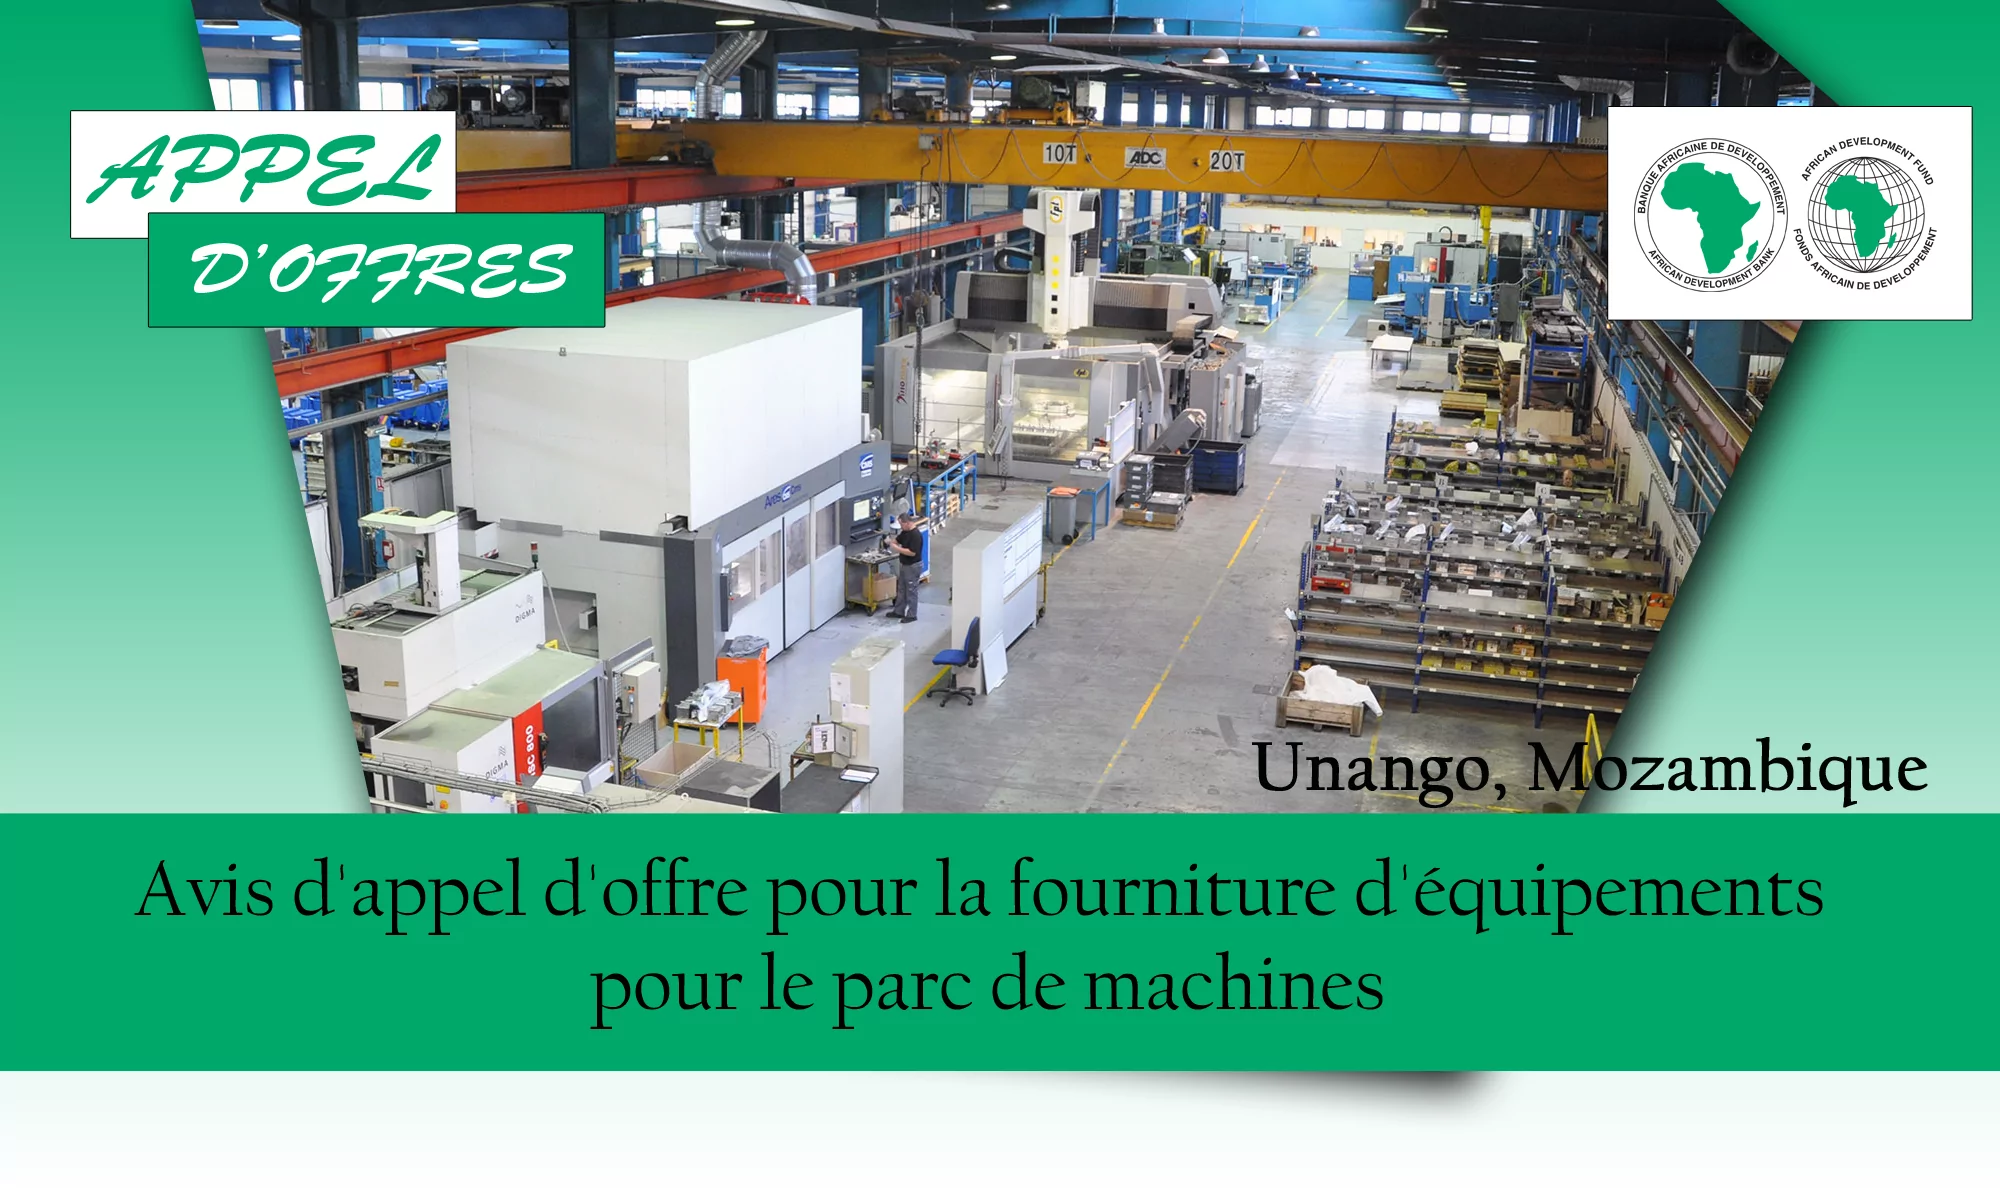 Avis d’appel d’offre pour la fourniture d’équipements pour le parc de machines, Unango, Mozambique